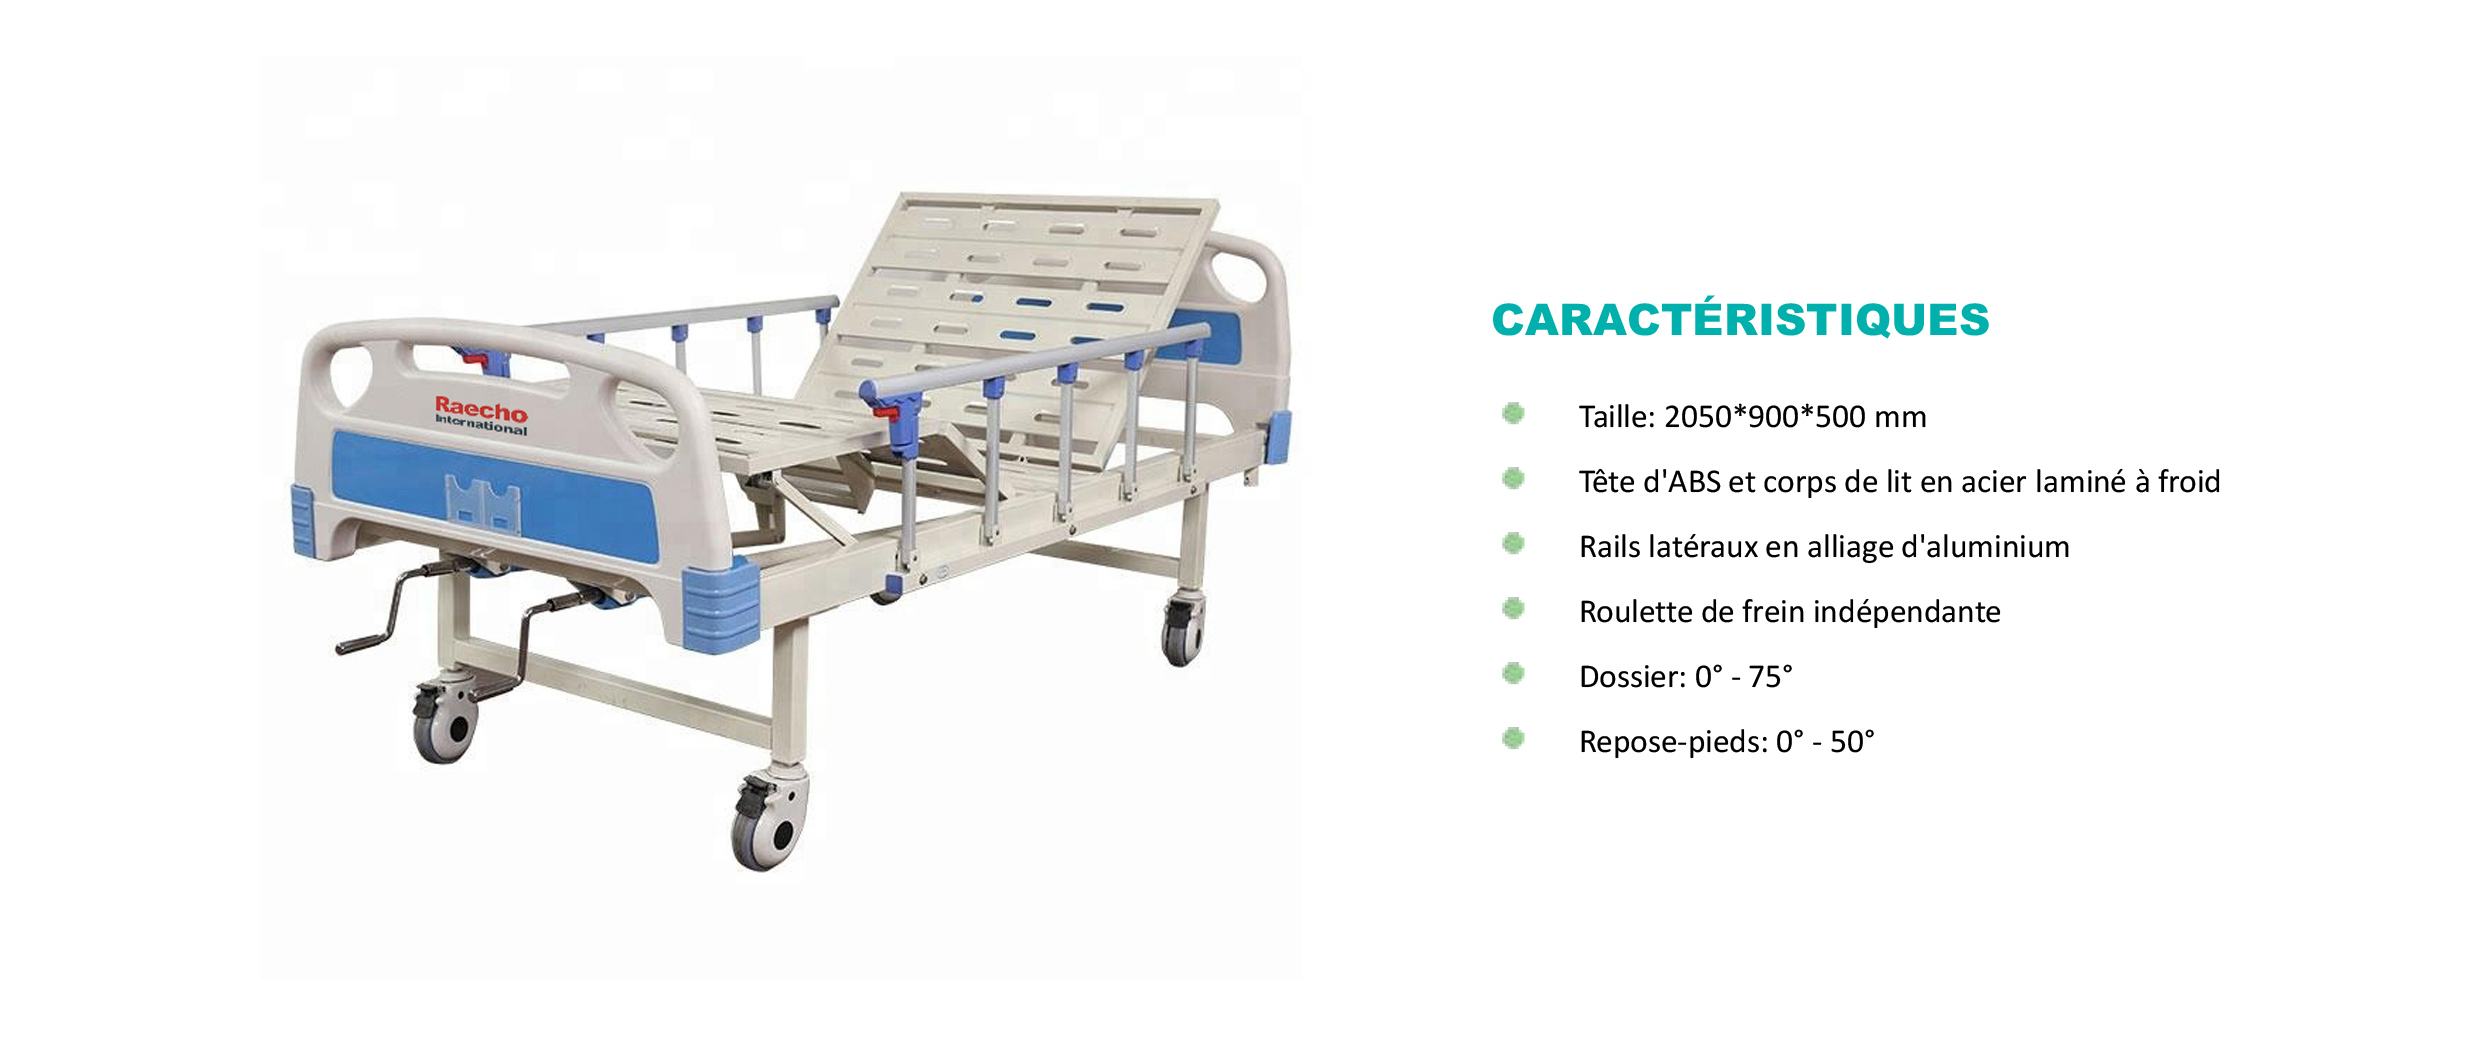 Raecho-Hospital Bed-1.jpg